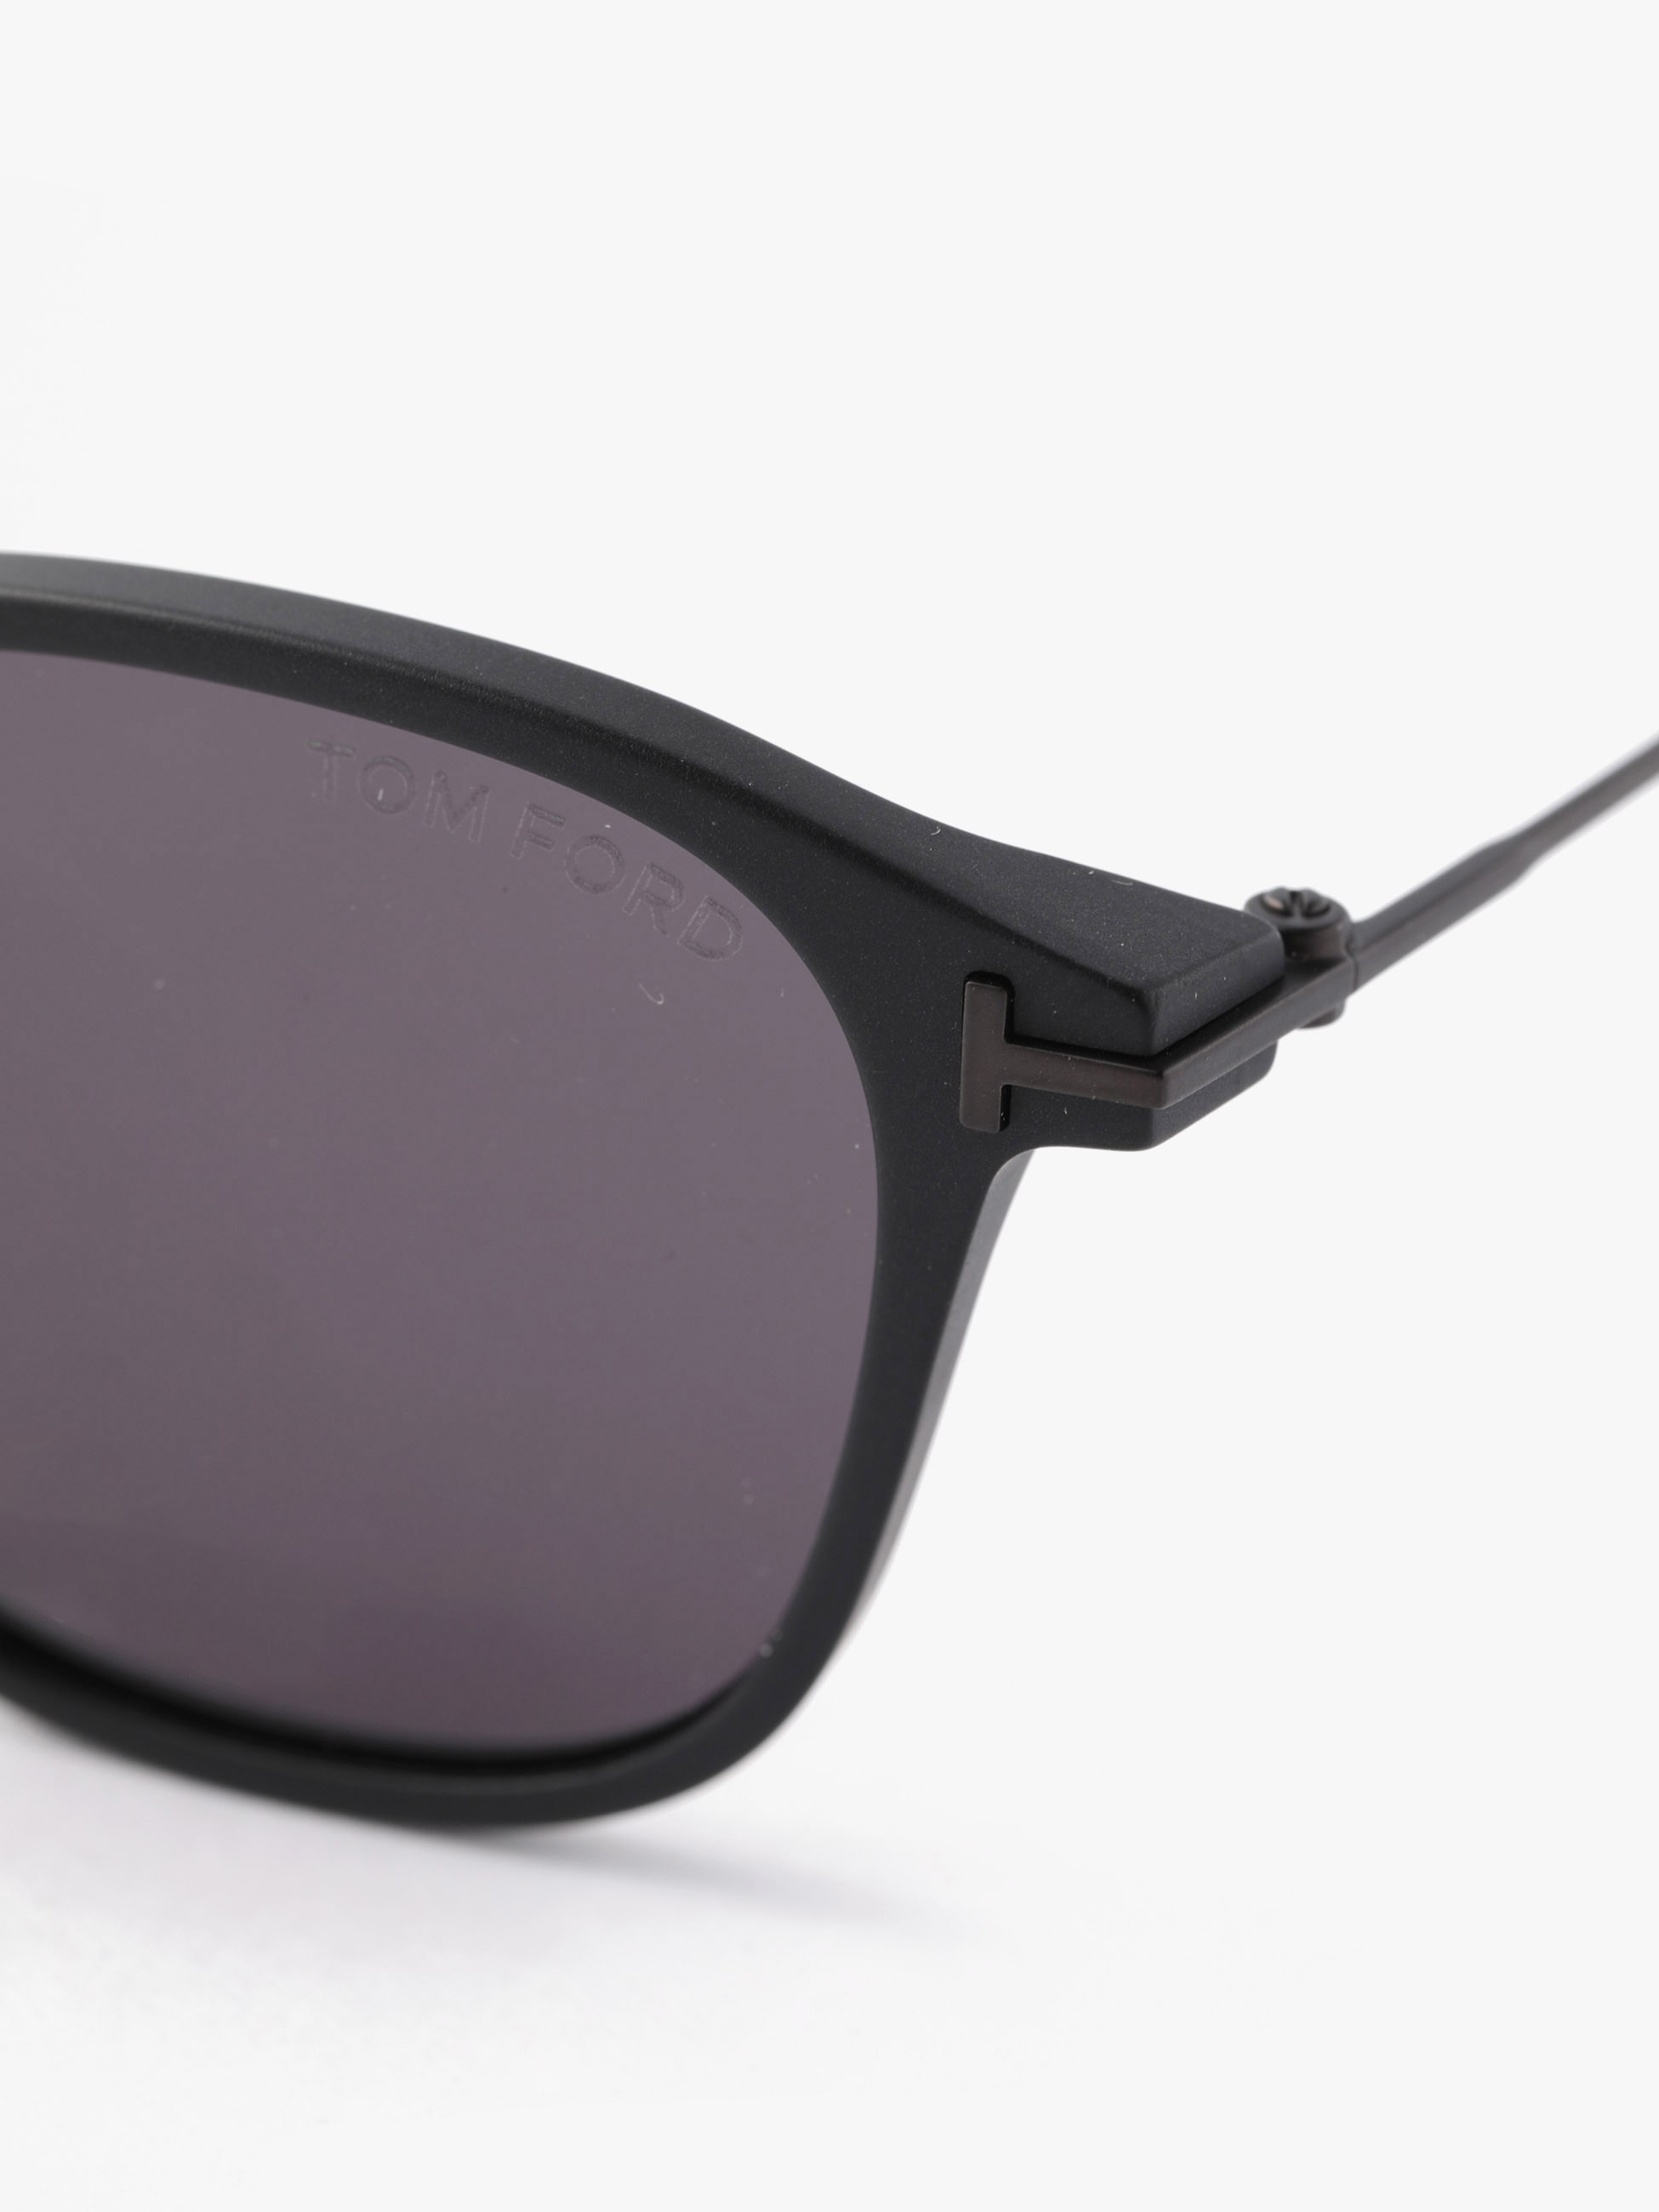 Sunglasses (FT0793-D)